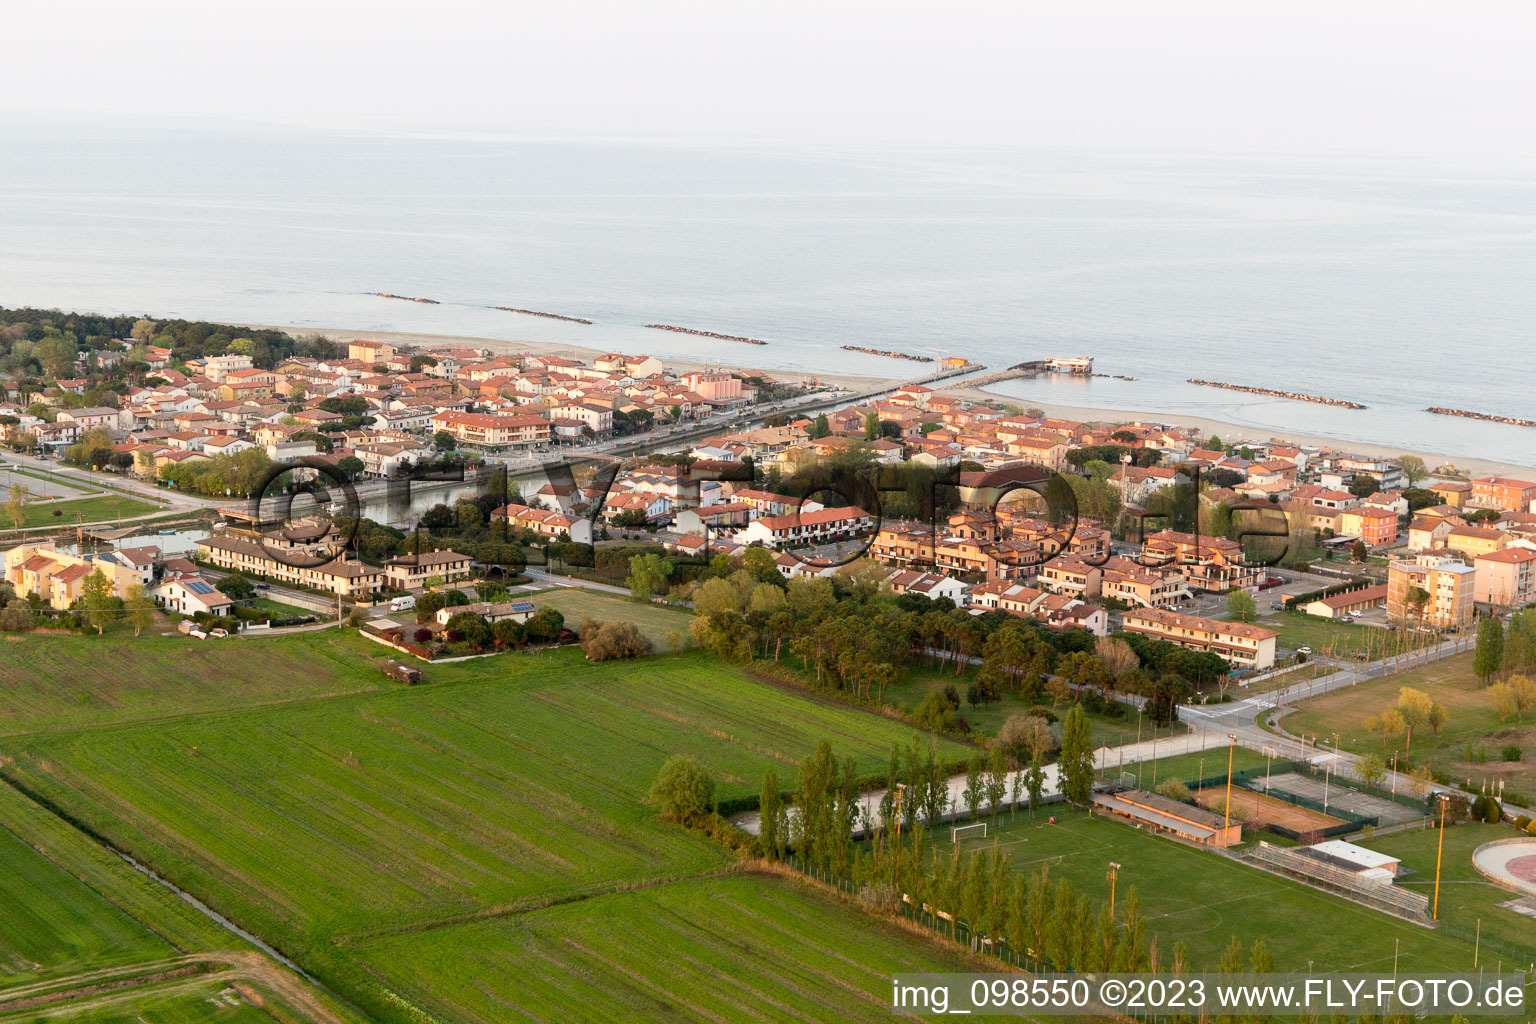 Luftbild von Casalborsetti im Bundesland Emilia-Romagna, Italien